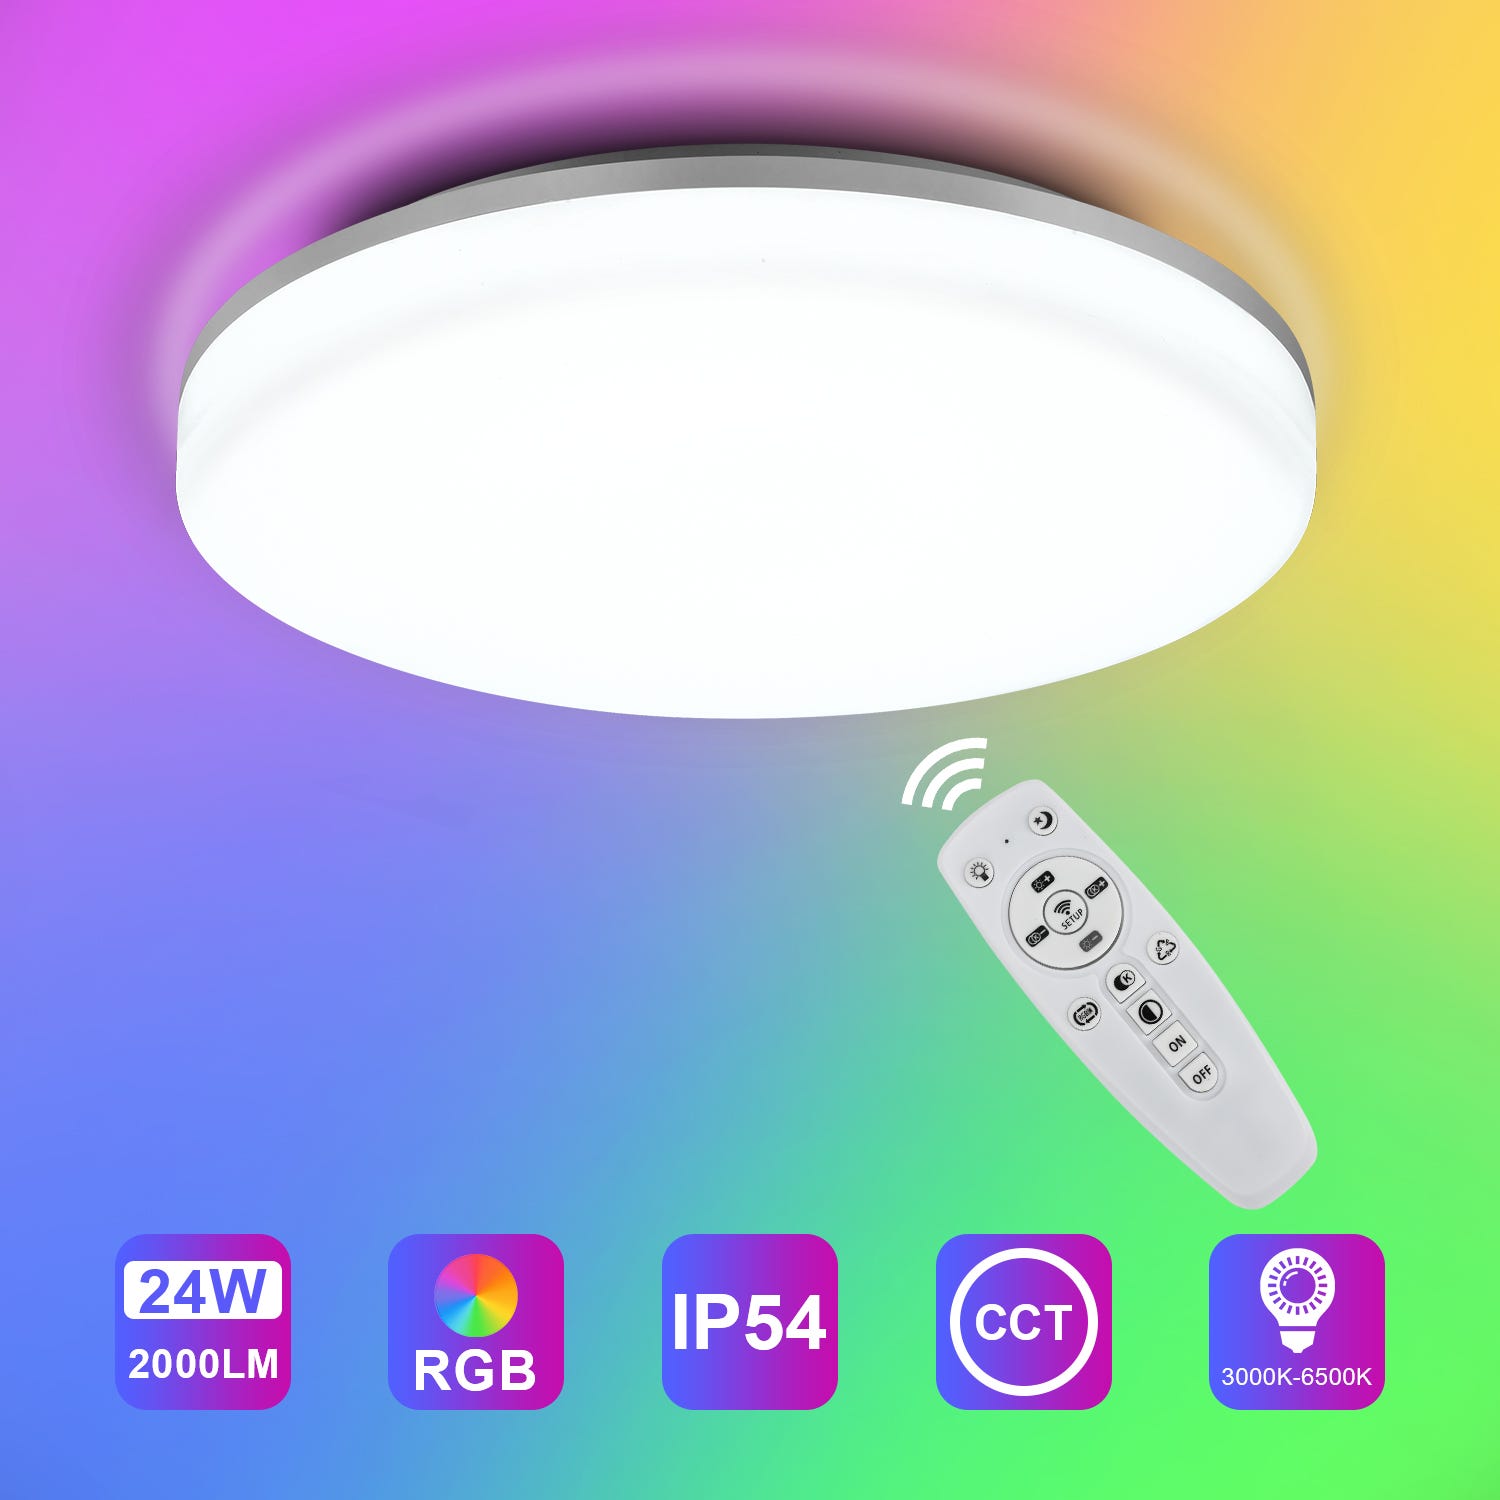 LEOEU Plafonnier LED RGB dimmable avec télécommande, Plafonnier LED RGB 36W  3600lm dimmable avec 7 couleurs de lumière, IP54 led salle de bain dimmable  pour salon chambre chambre d'enfant salle de 